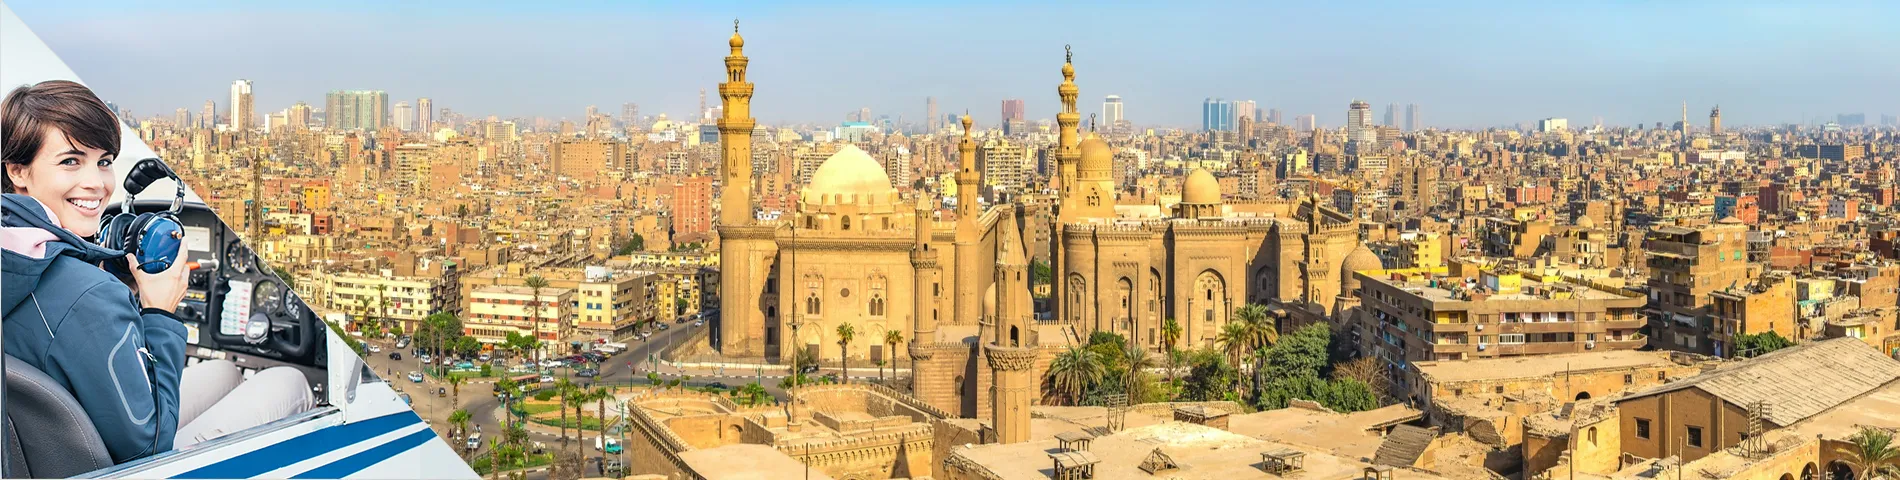 El Cairo - Árabe para la Aviación